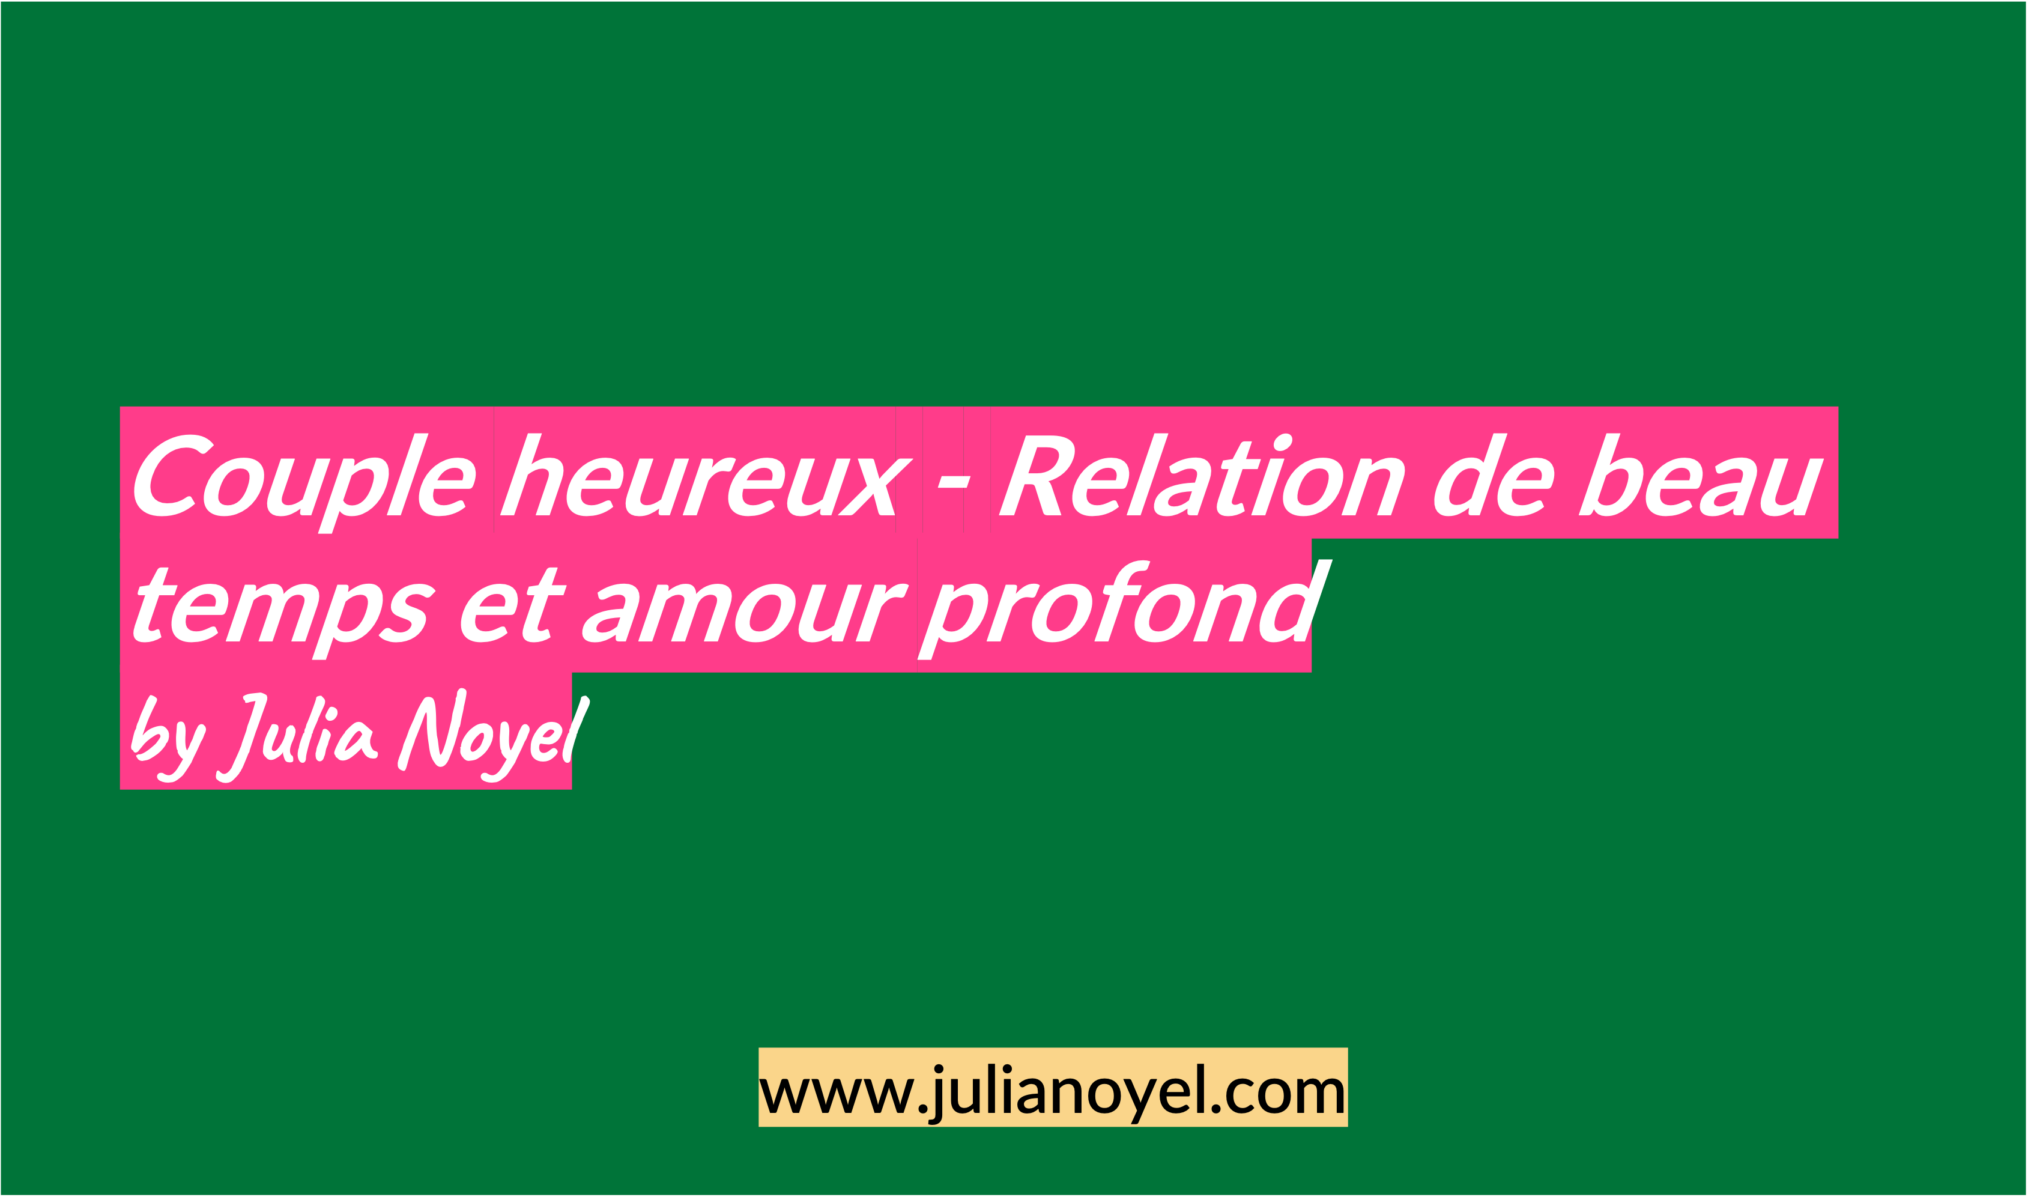 Couple heureux - Relation de beau temps et amour profond by Julia Noyel